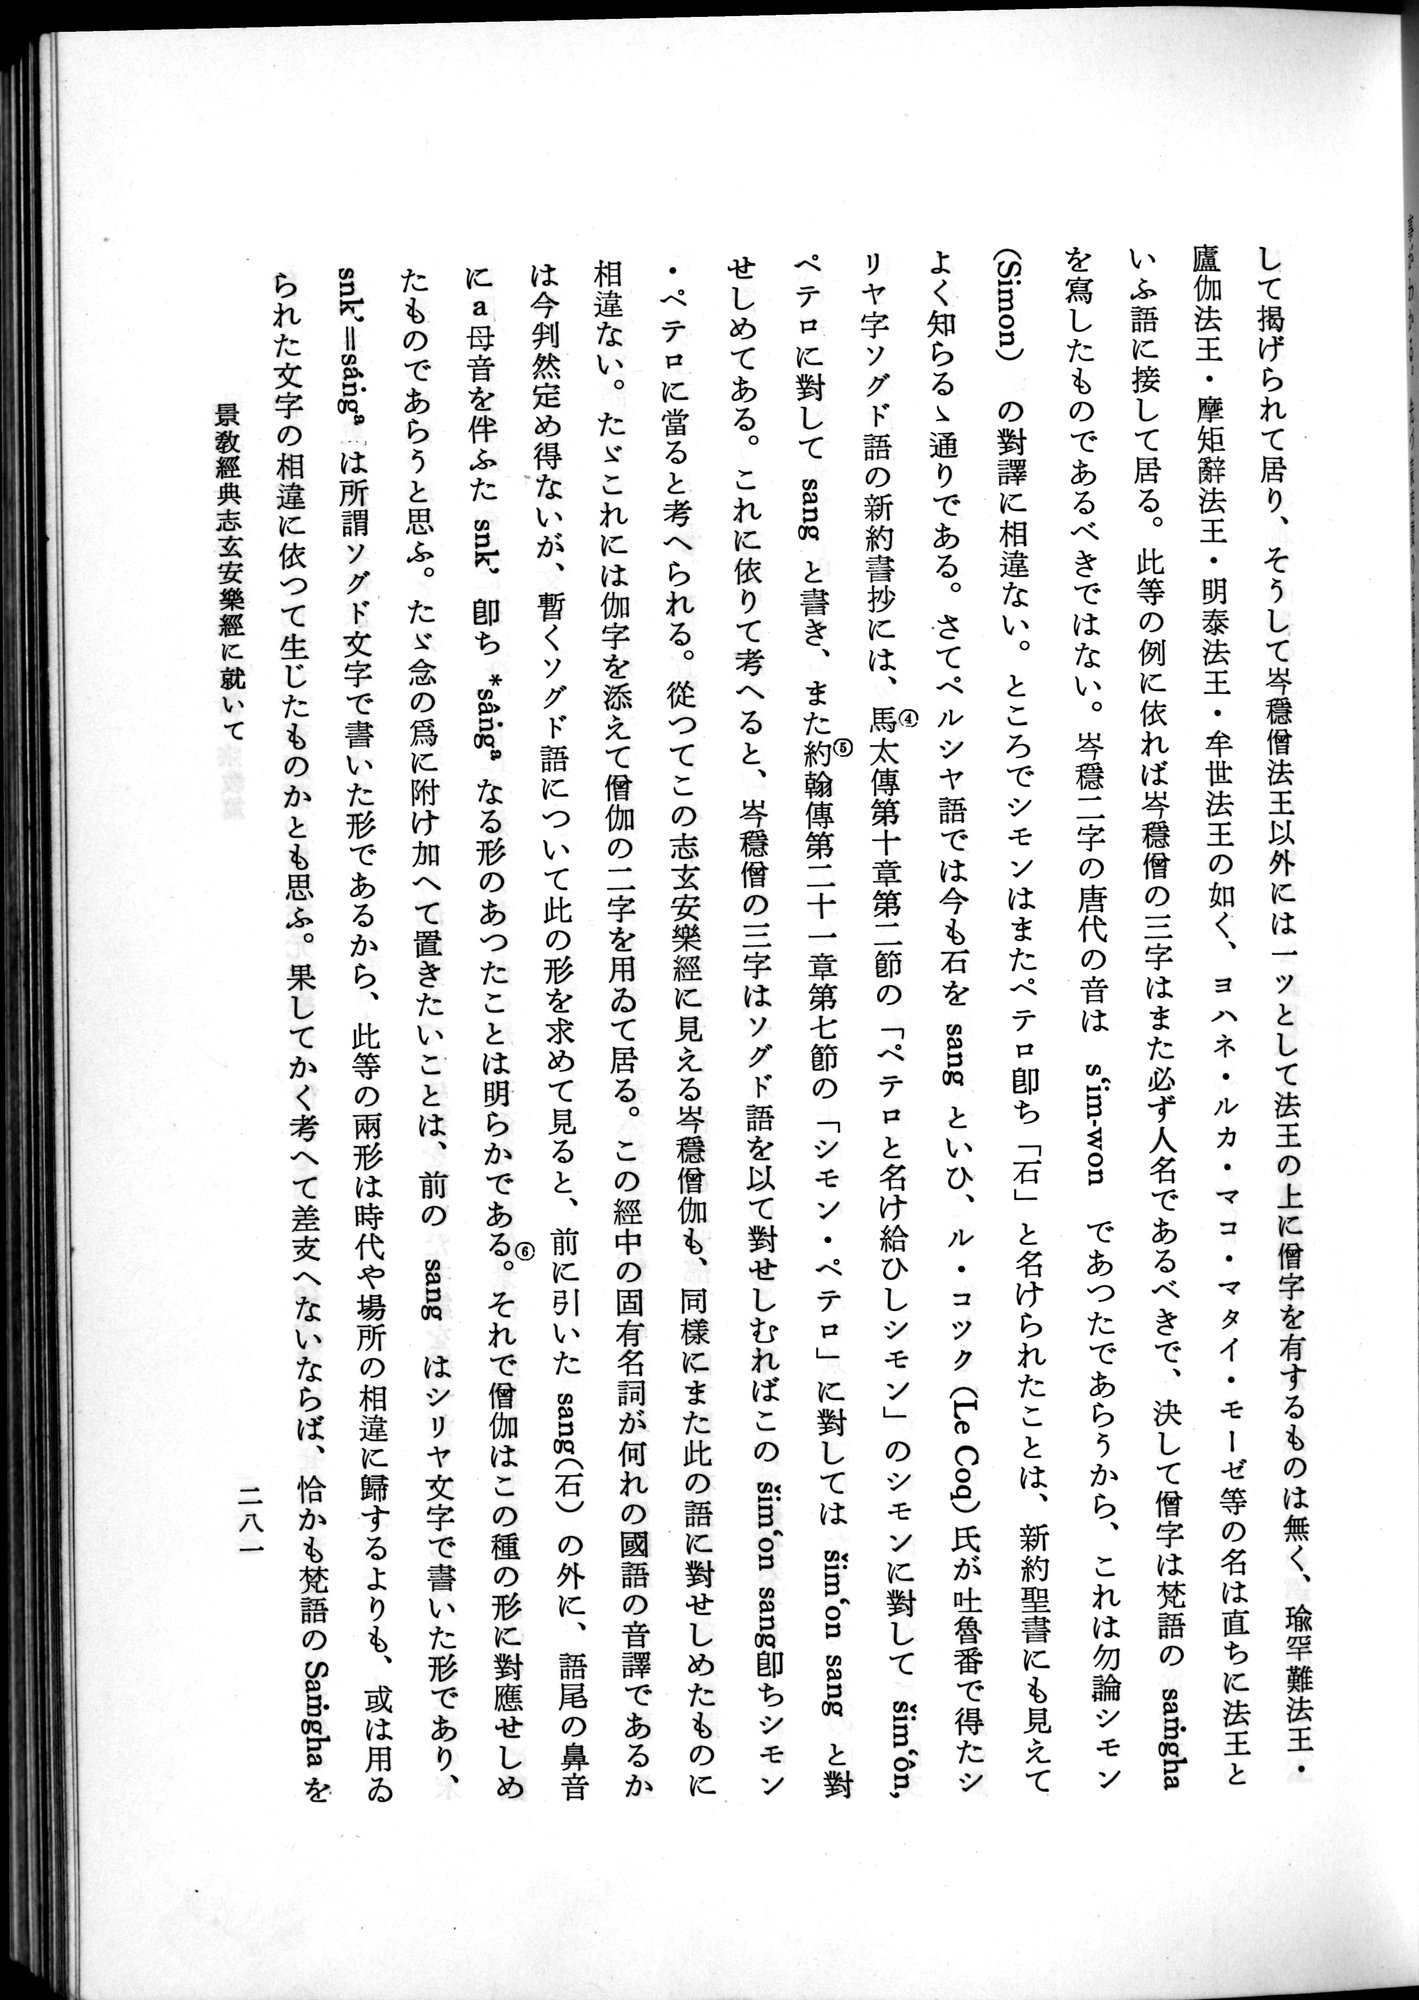 羽田博士史学論文集 : vol.2 / 343 ページ（白黒高解像度画像）